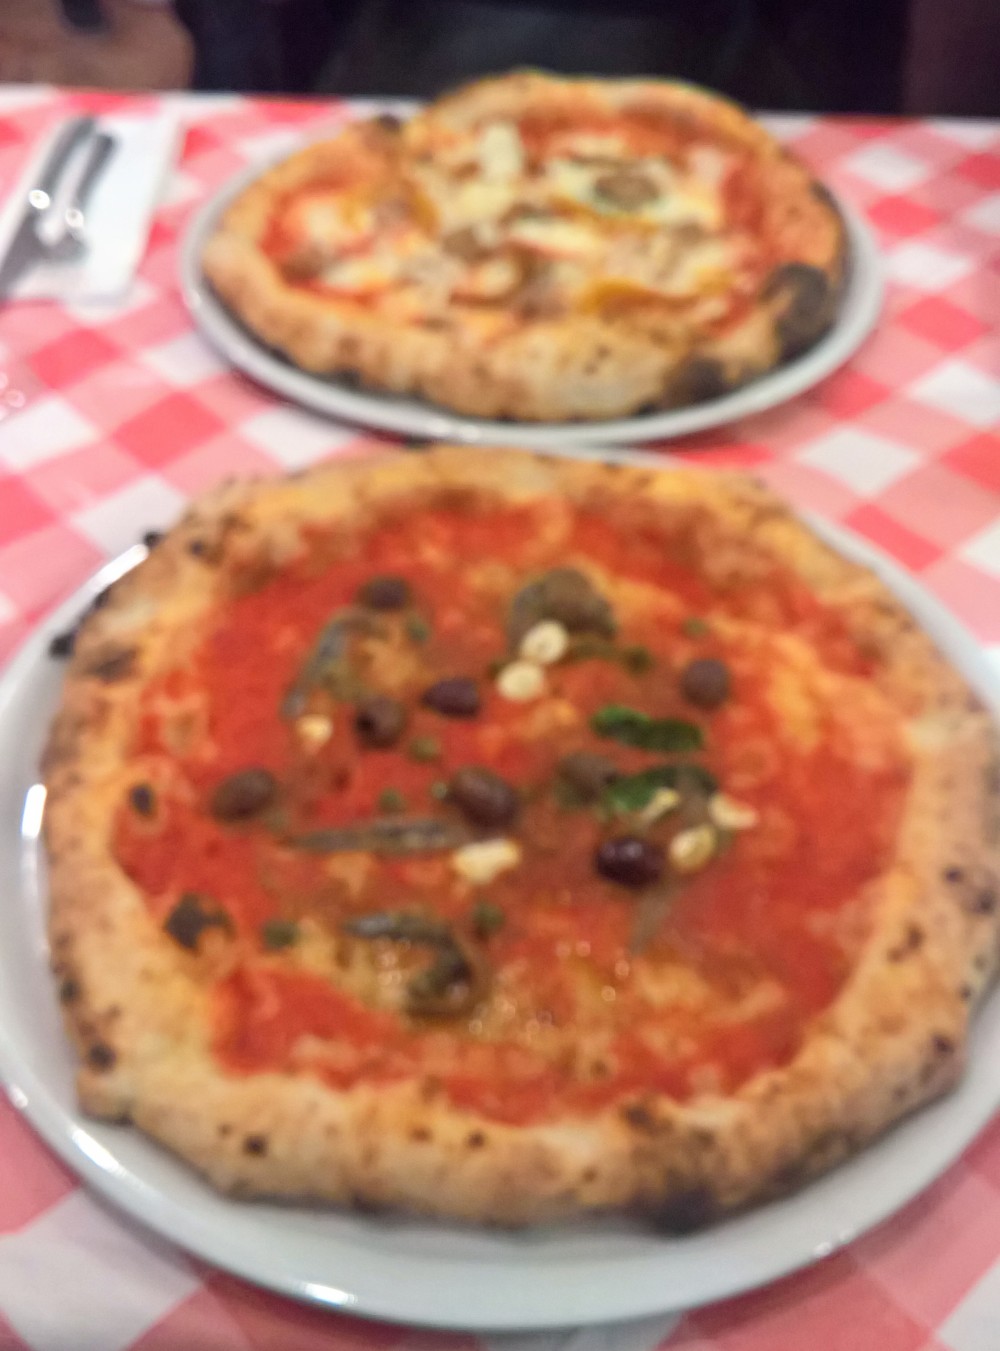 Siciliana und Saporita, das Bild leider unscharf, die beiden Pizzen aber ... - Pizzeria la Spiga - Wien